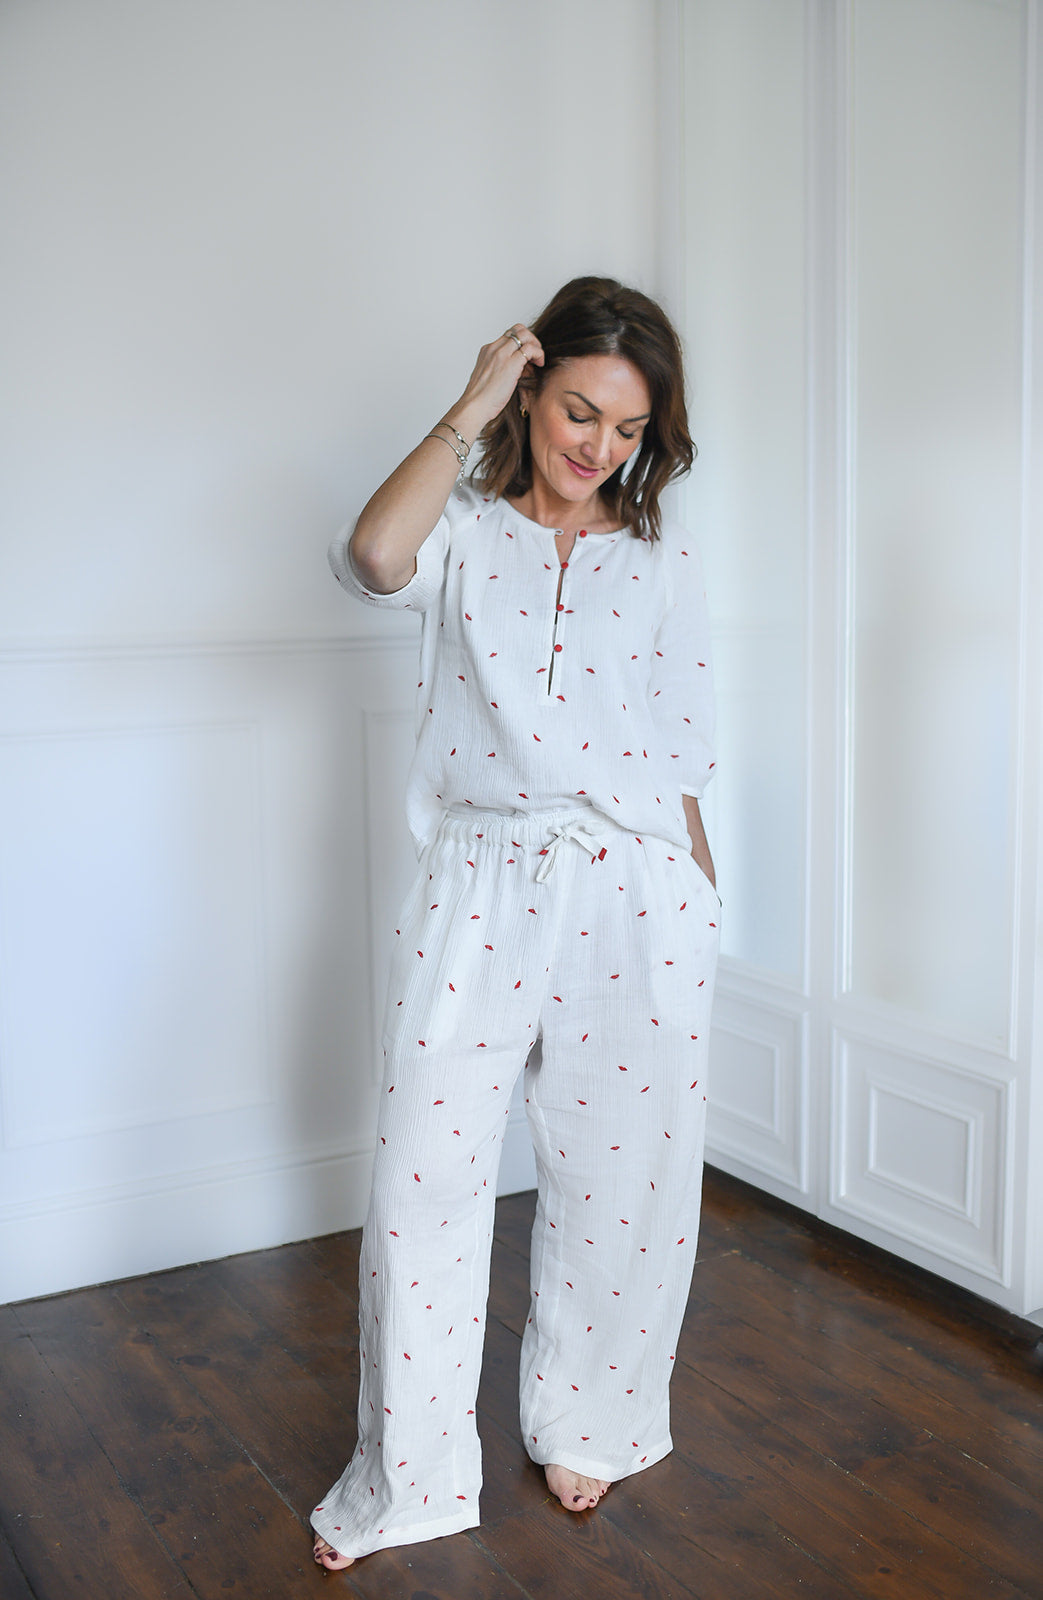 Luxury White Cotton Pyjamas with red lip